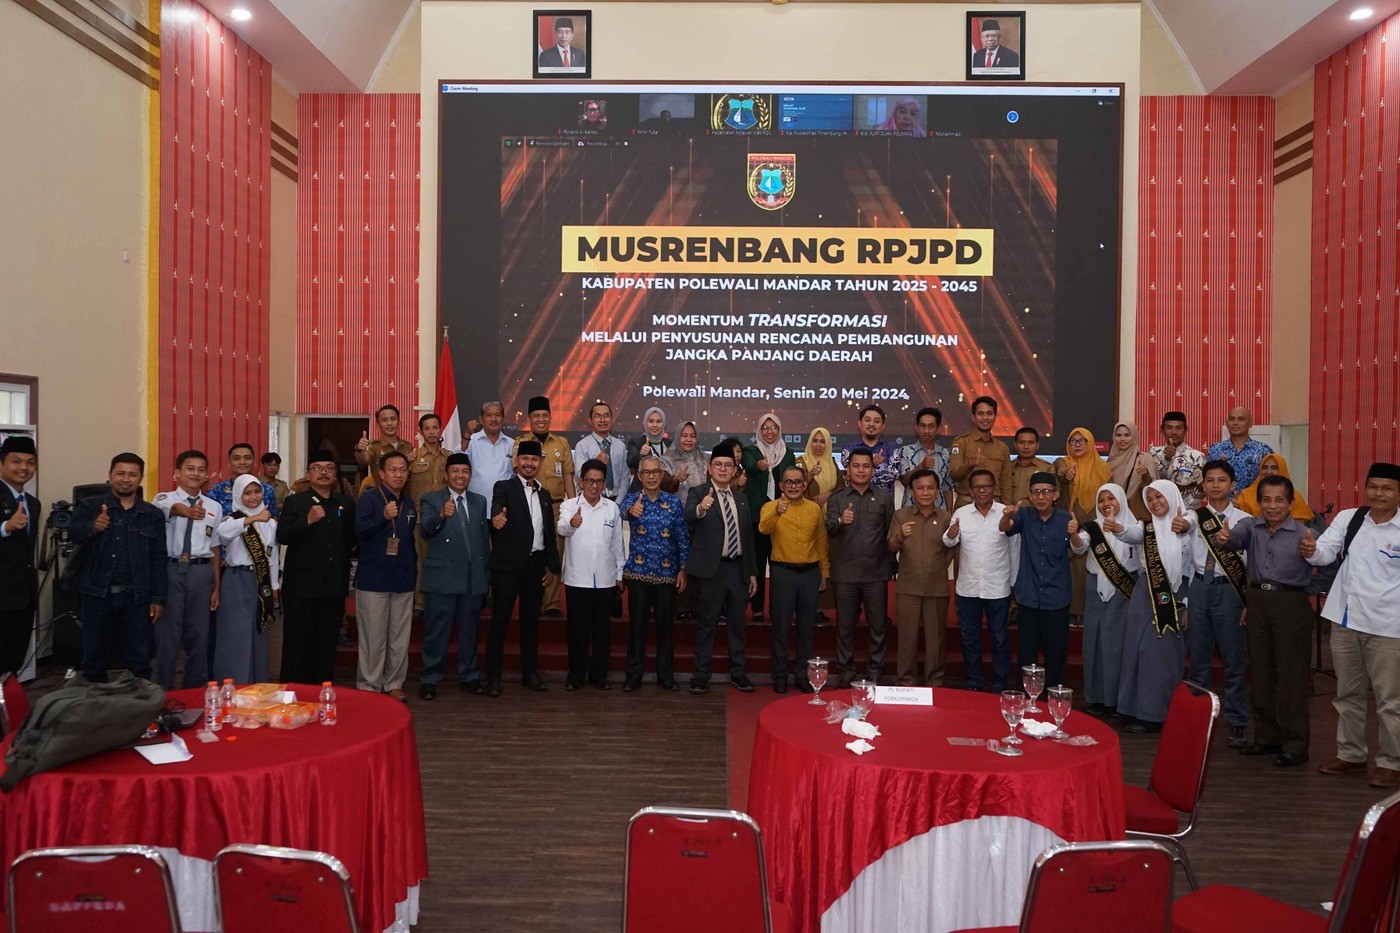 Musrenbang Penyusunan RPJPD Kabupaten Polewali Mandar Tahun 2025-2045